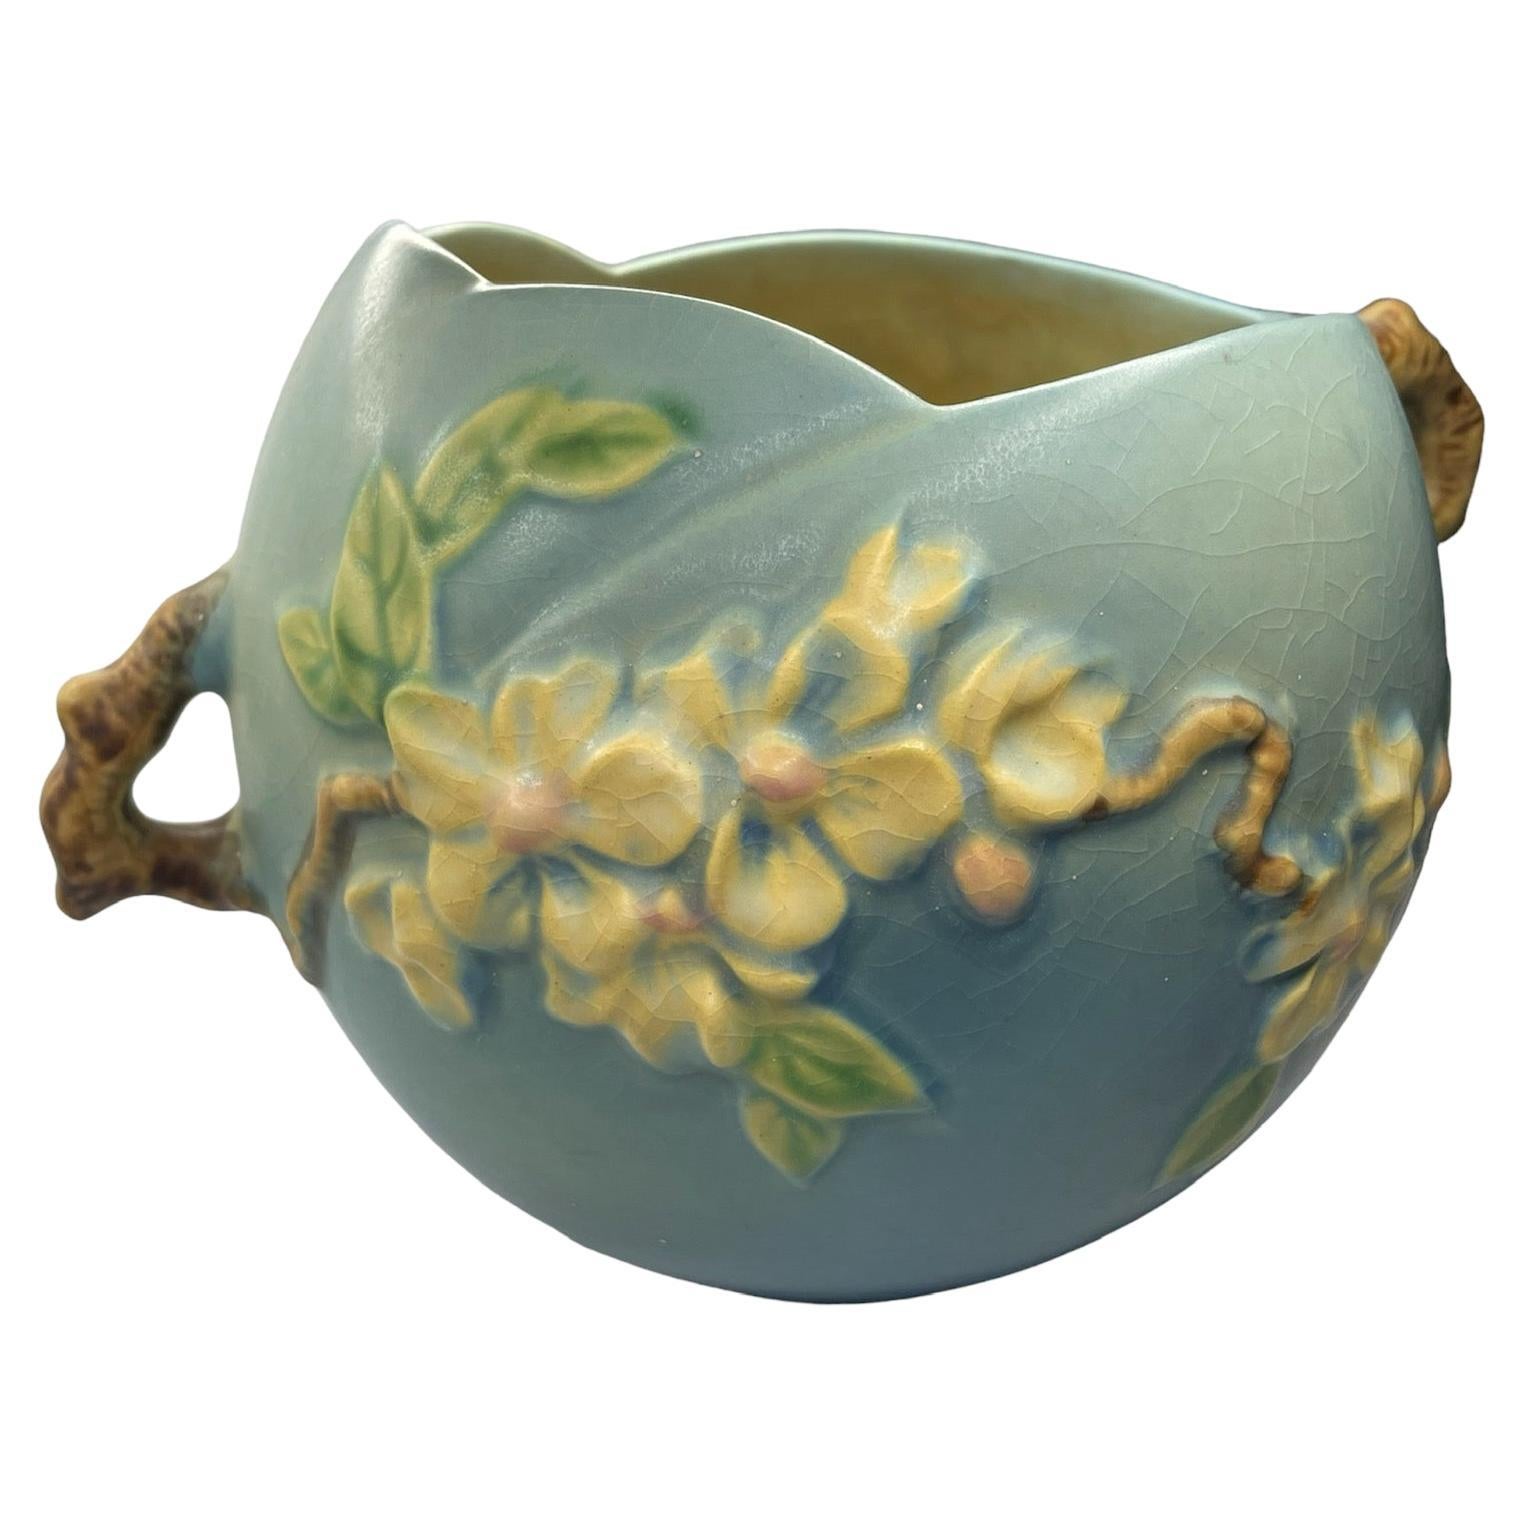 Roseville Art Pottery Apple Blossom Pattern Bowl